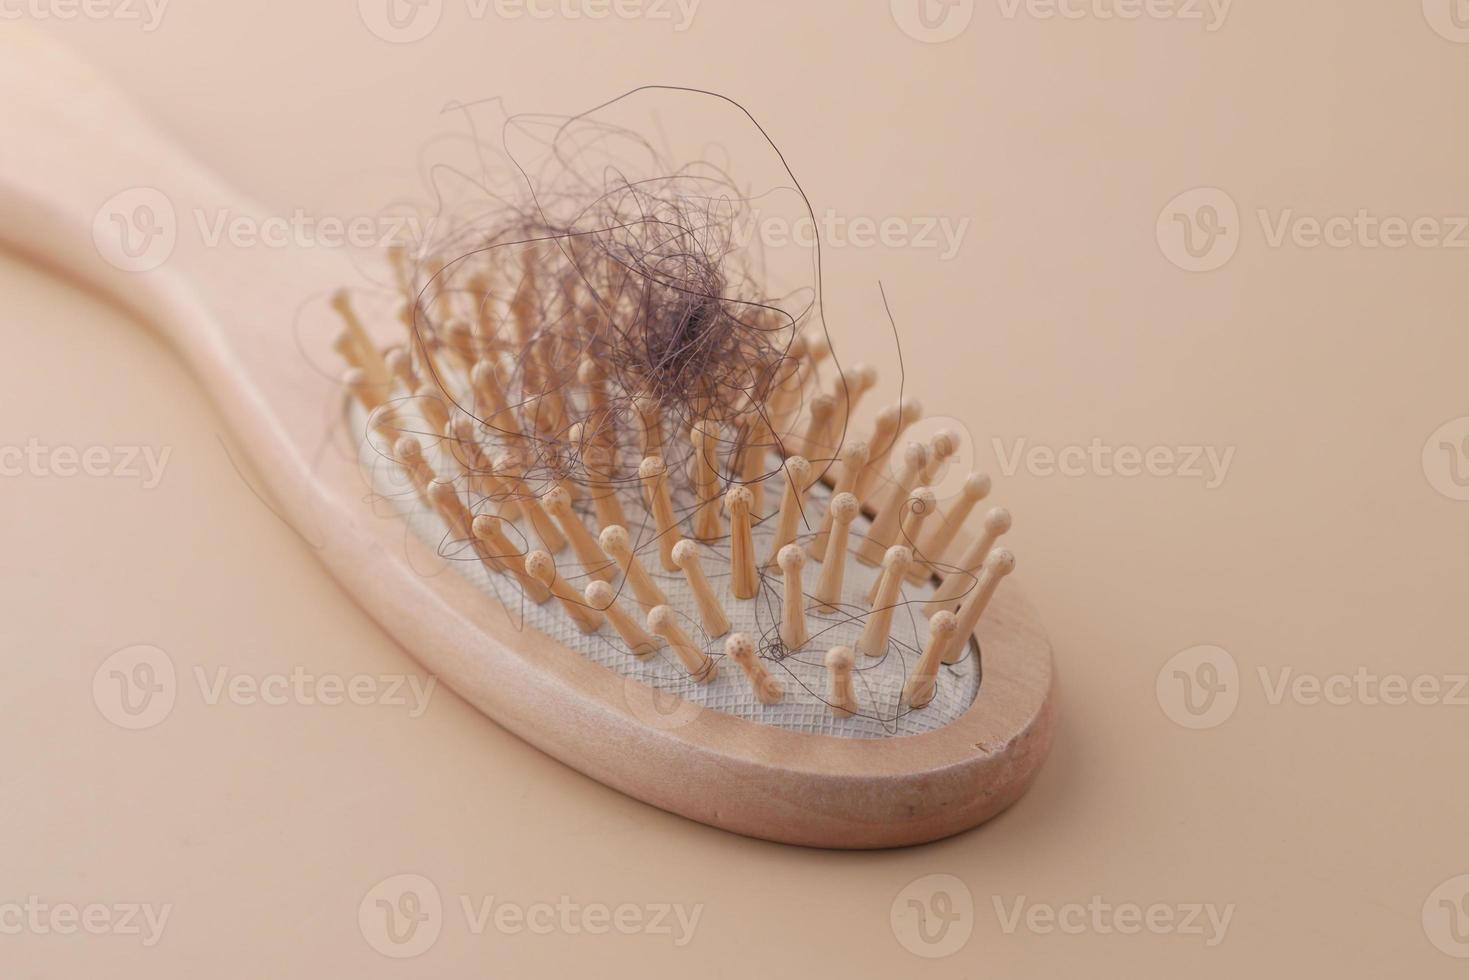 une brosse à cheveux perdus sur la table photo